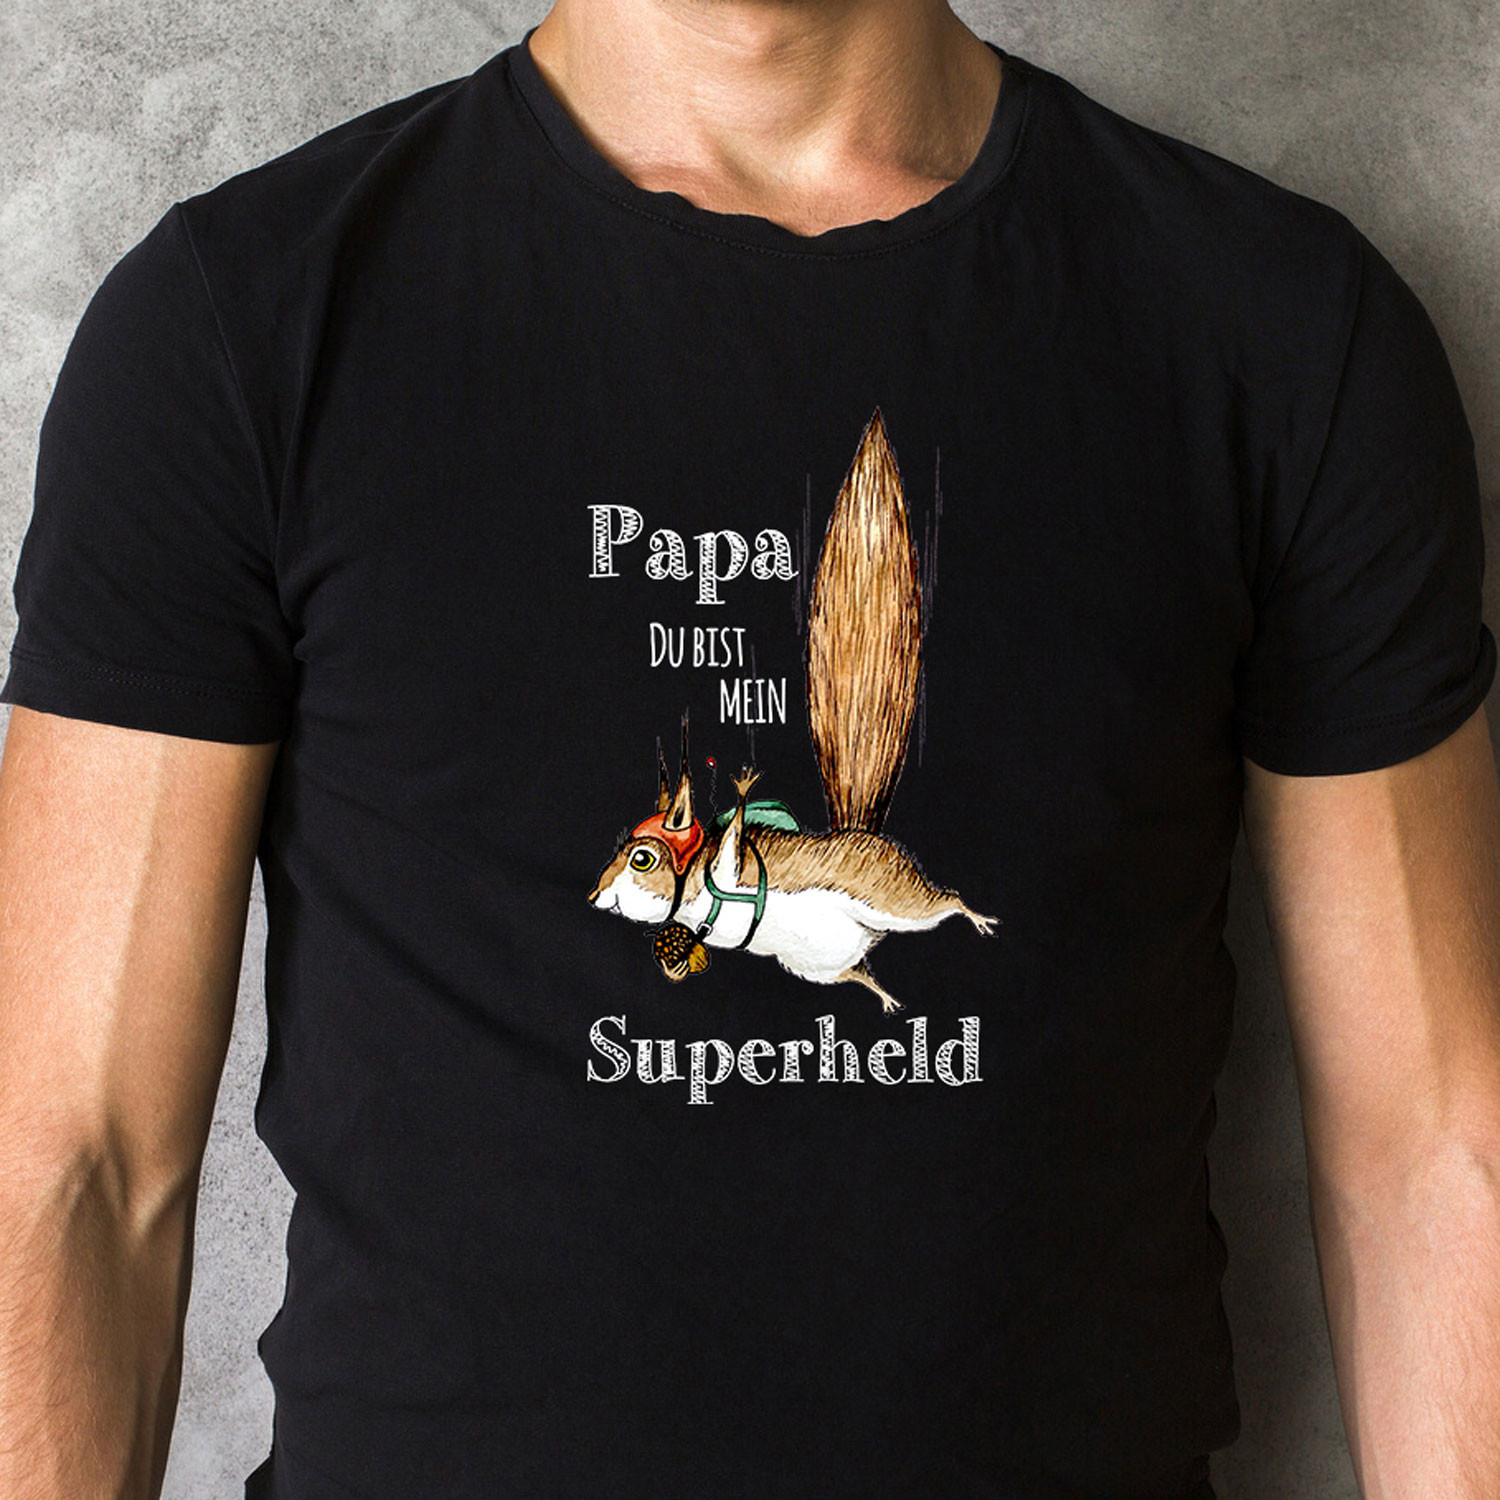 Herren T Shirt Mit Flughornchen Spruch Papa Du Bist Mein Superheld Shirt Schwarz In 4 Grossen Hs10 Wandtattoos Elfentur Tassen